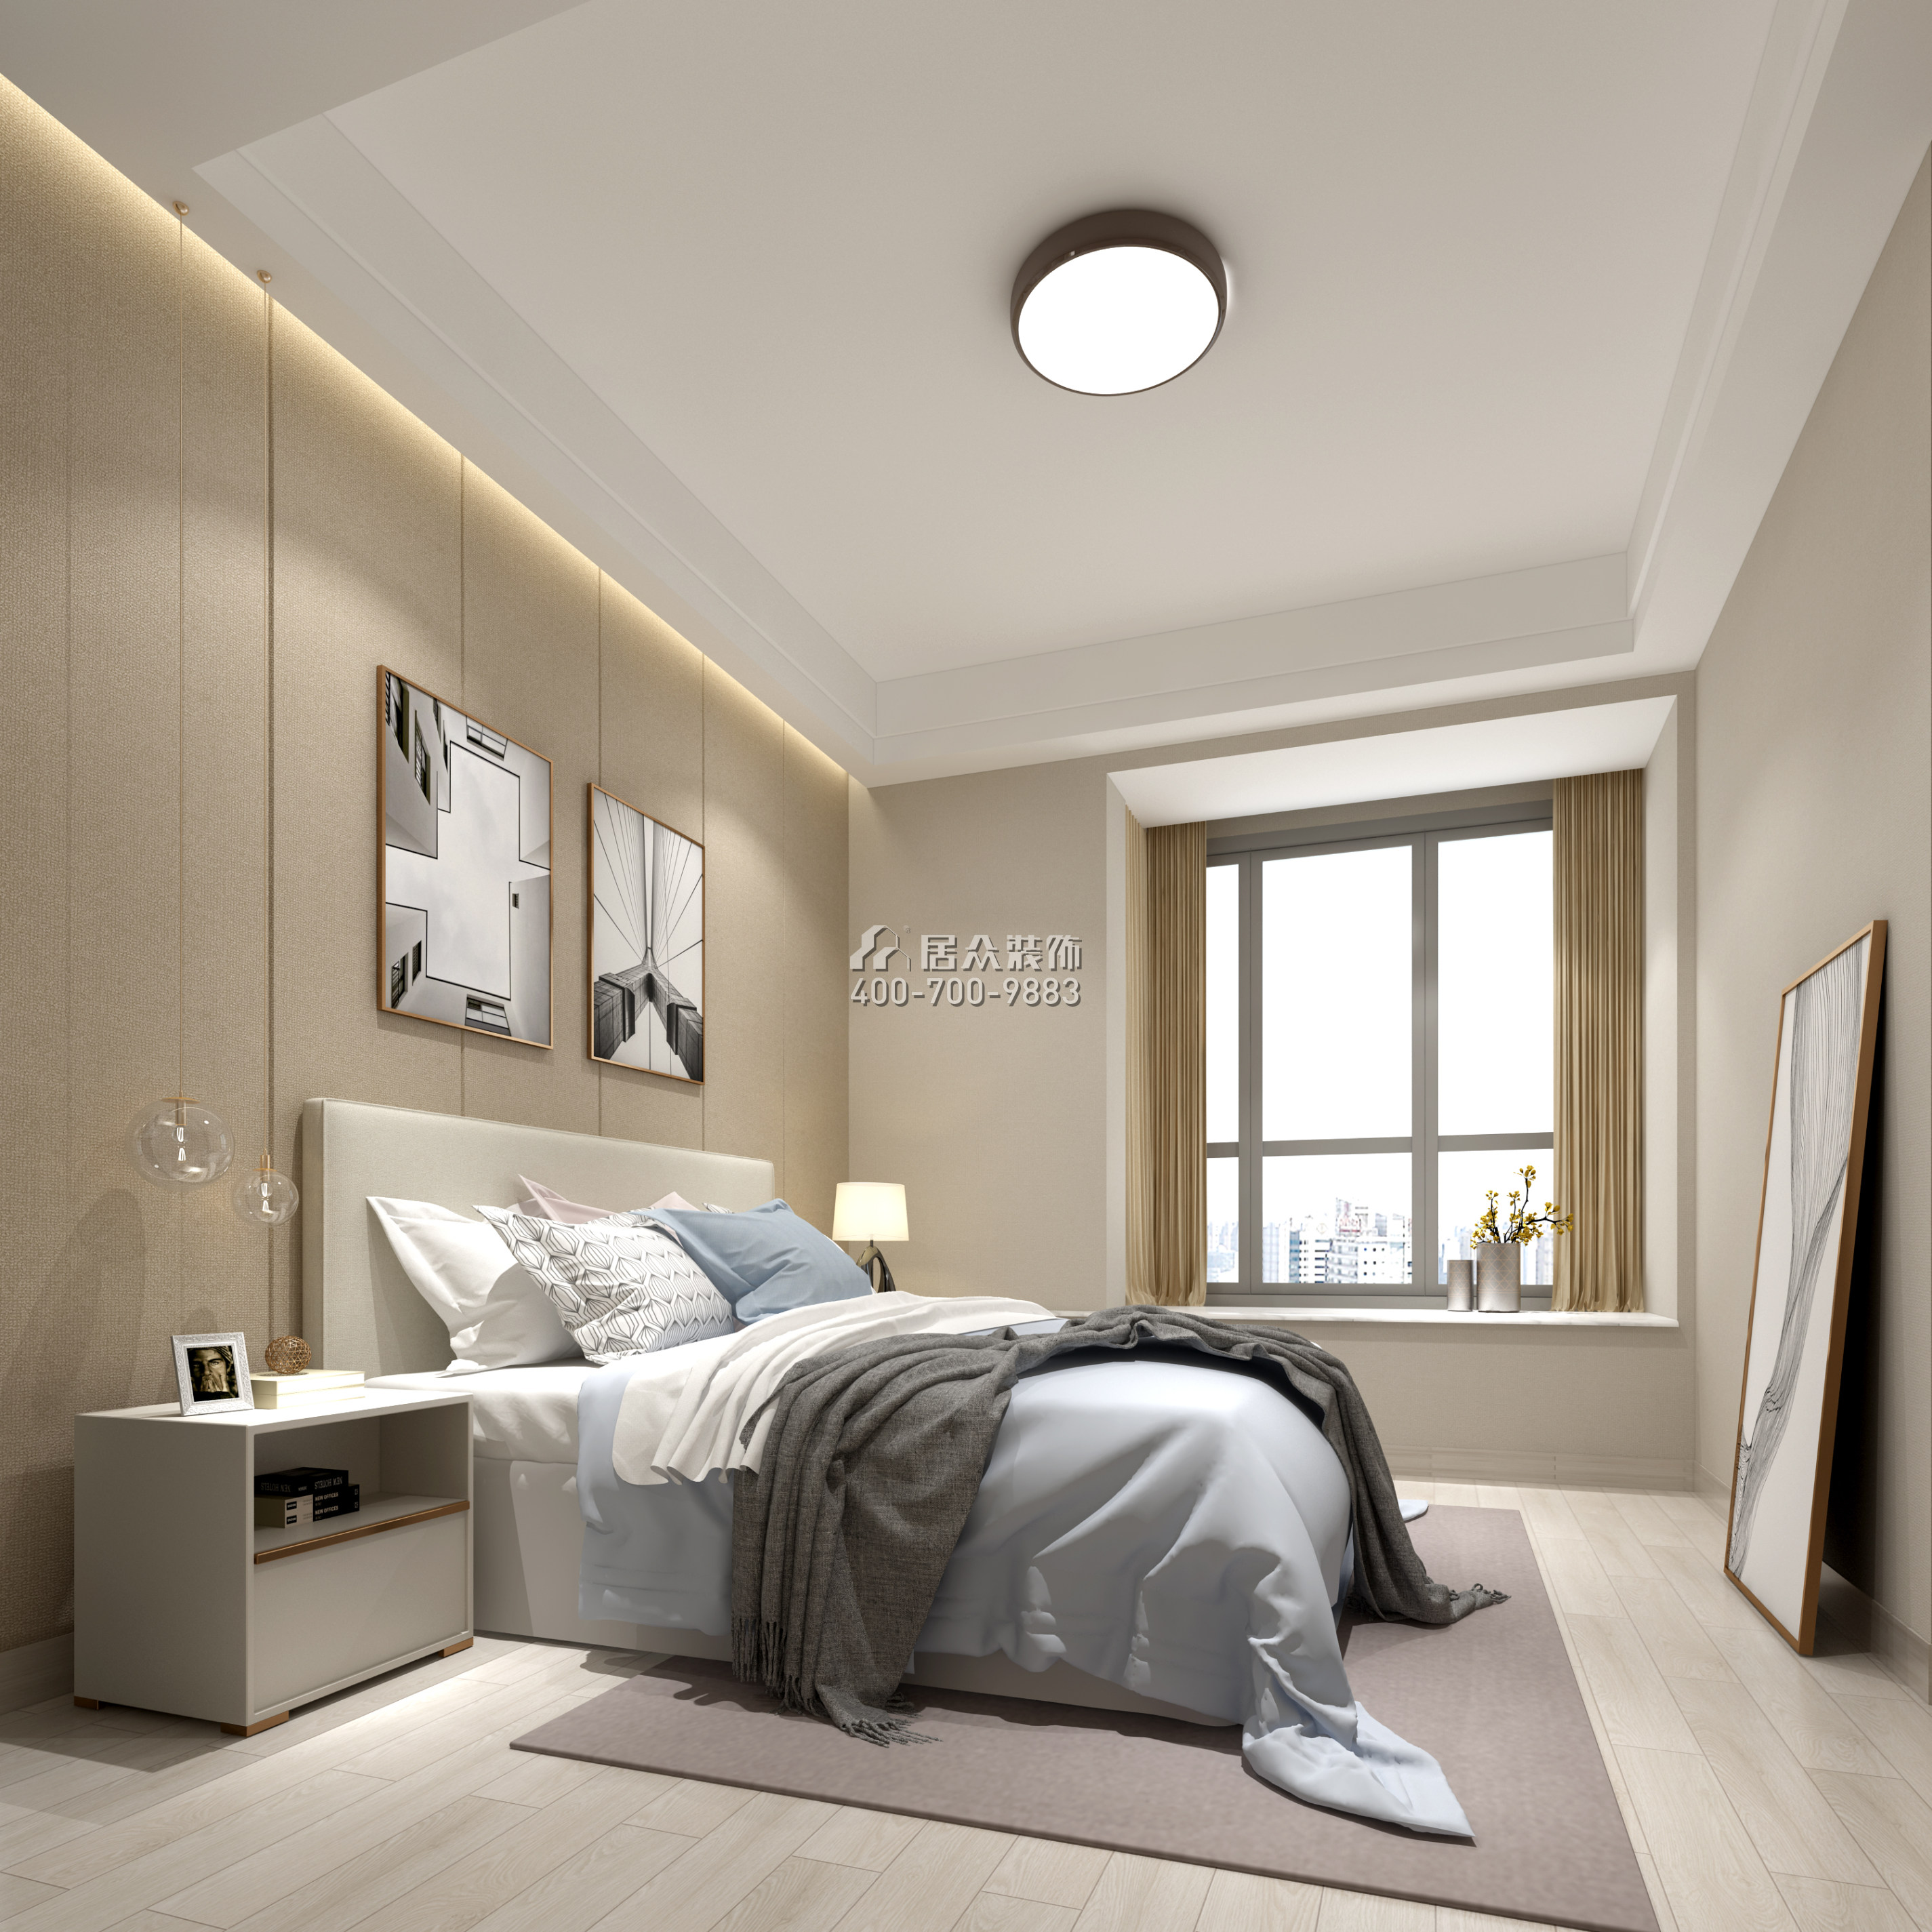 黃埔雅苑三期72平方米現代簡約風格平層戶型臥室裝修效果圖